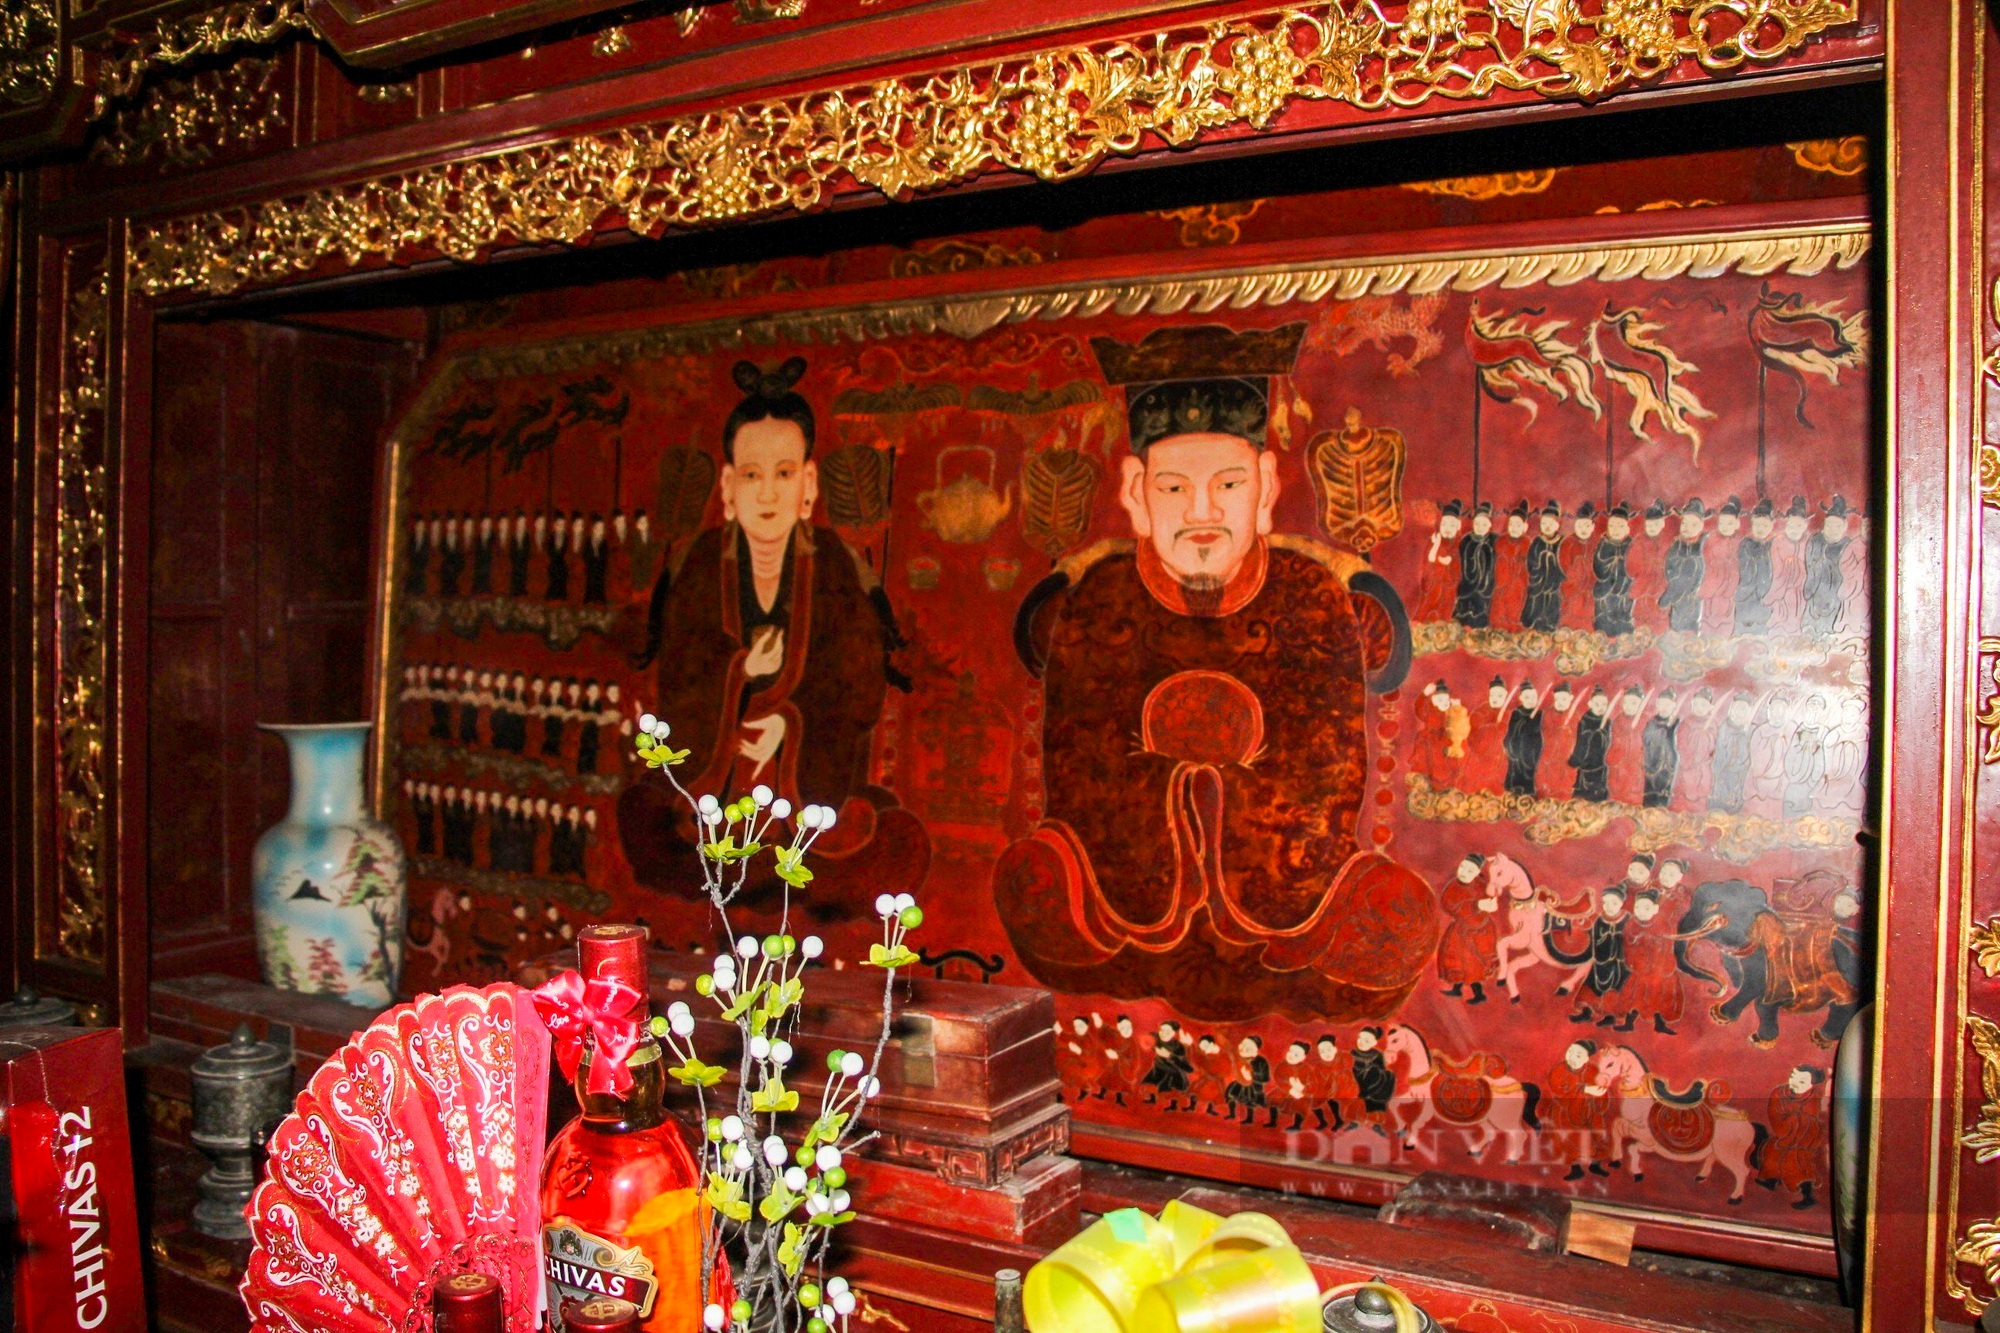 Ngai thờ sơn son thếp vàng 300 tuổi ở Thái Bình được công nhận là bảo vật quốc gia - Ảnh 13.